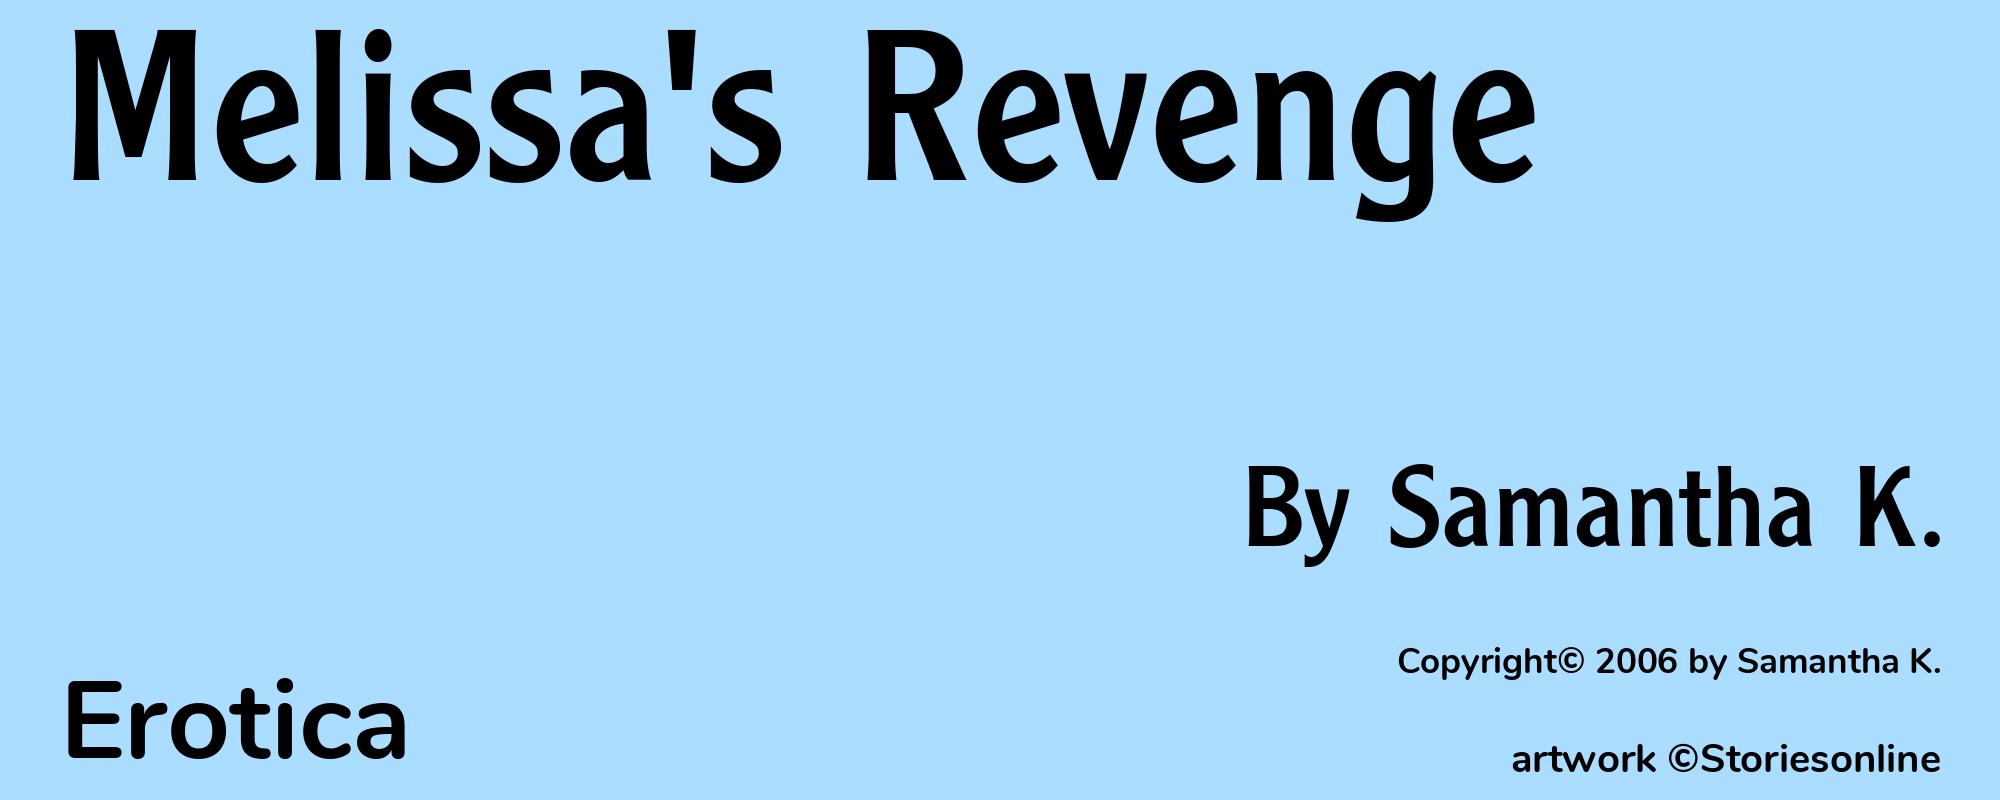 Melissa's Revenge - Cover